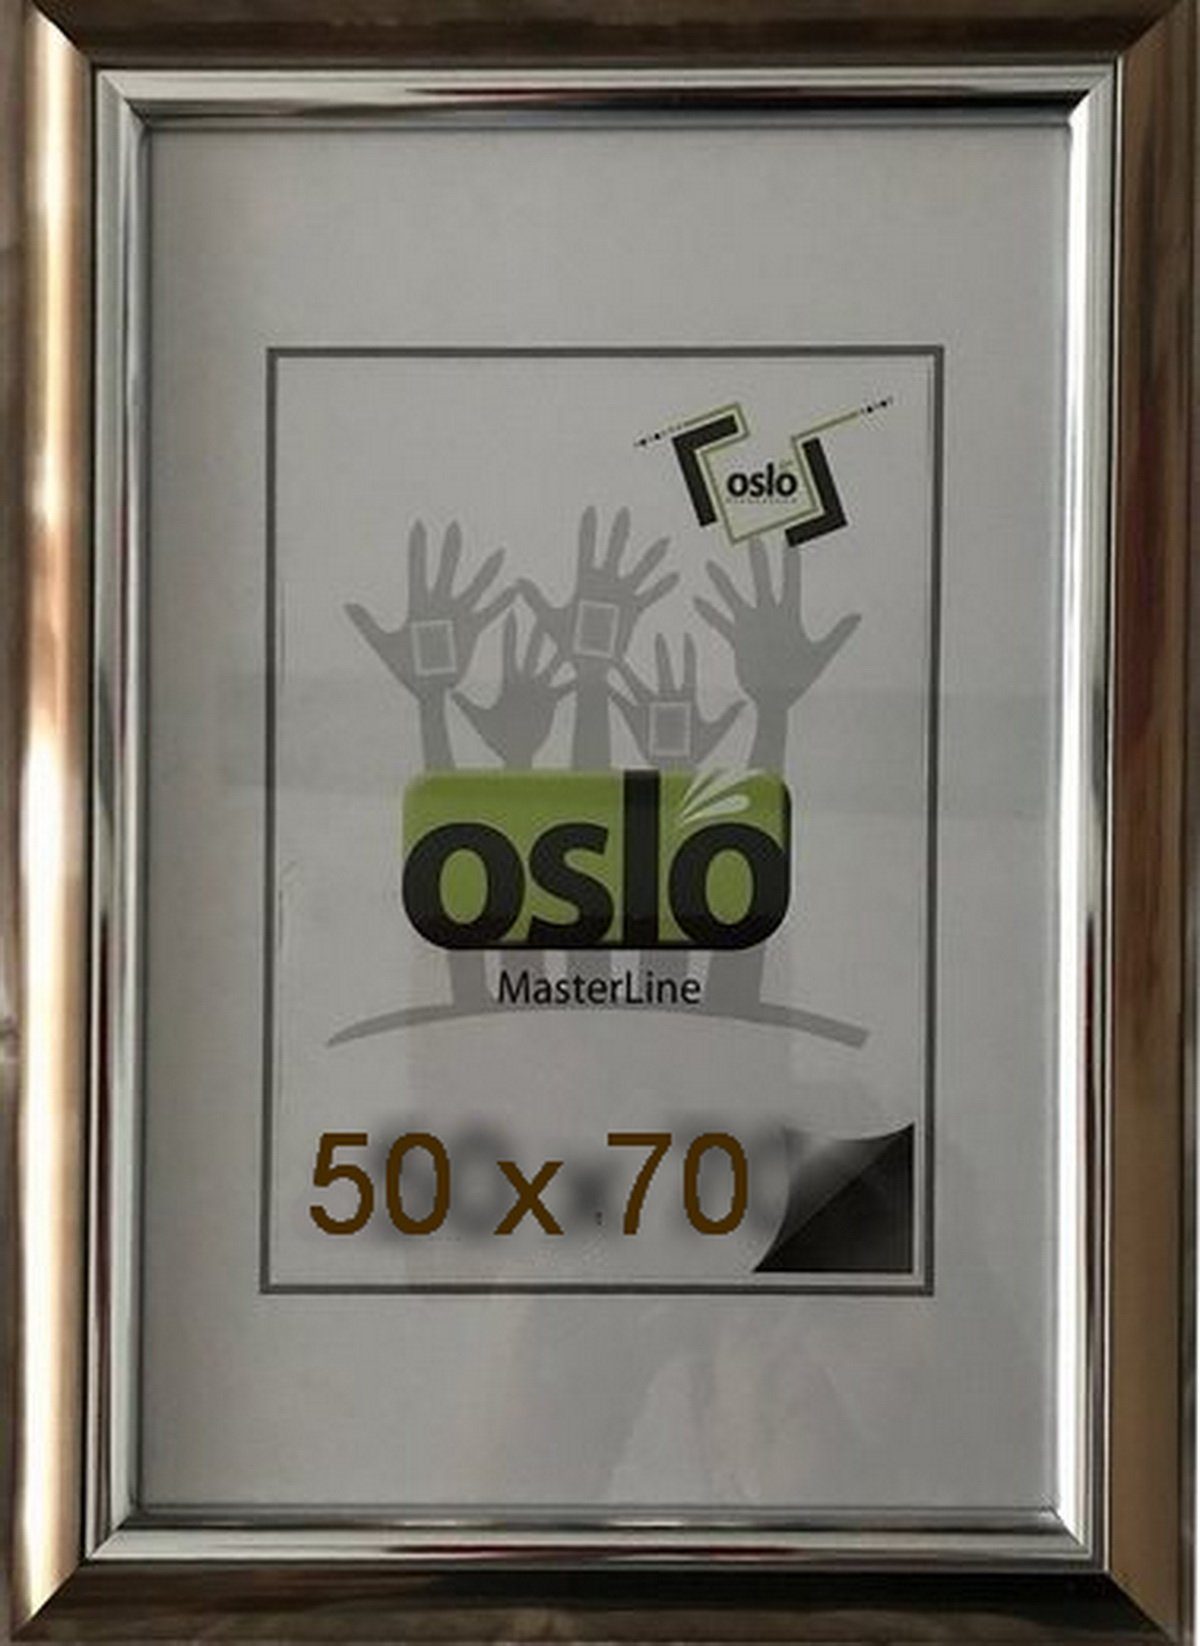 Innenleiste Oslo silber Becker+Hach glänzend Innenleiste glänzend FSC, 50x70 Kunststoff - Echtglas MasterLine Einzelrahmen bronze Bilderrahmen